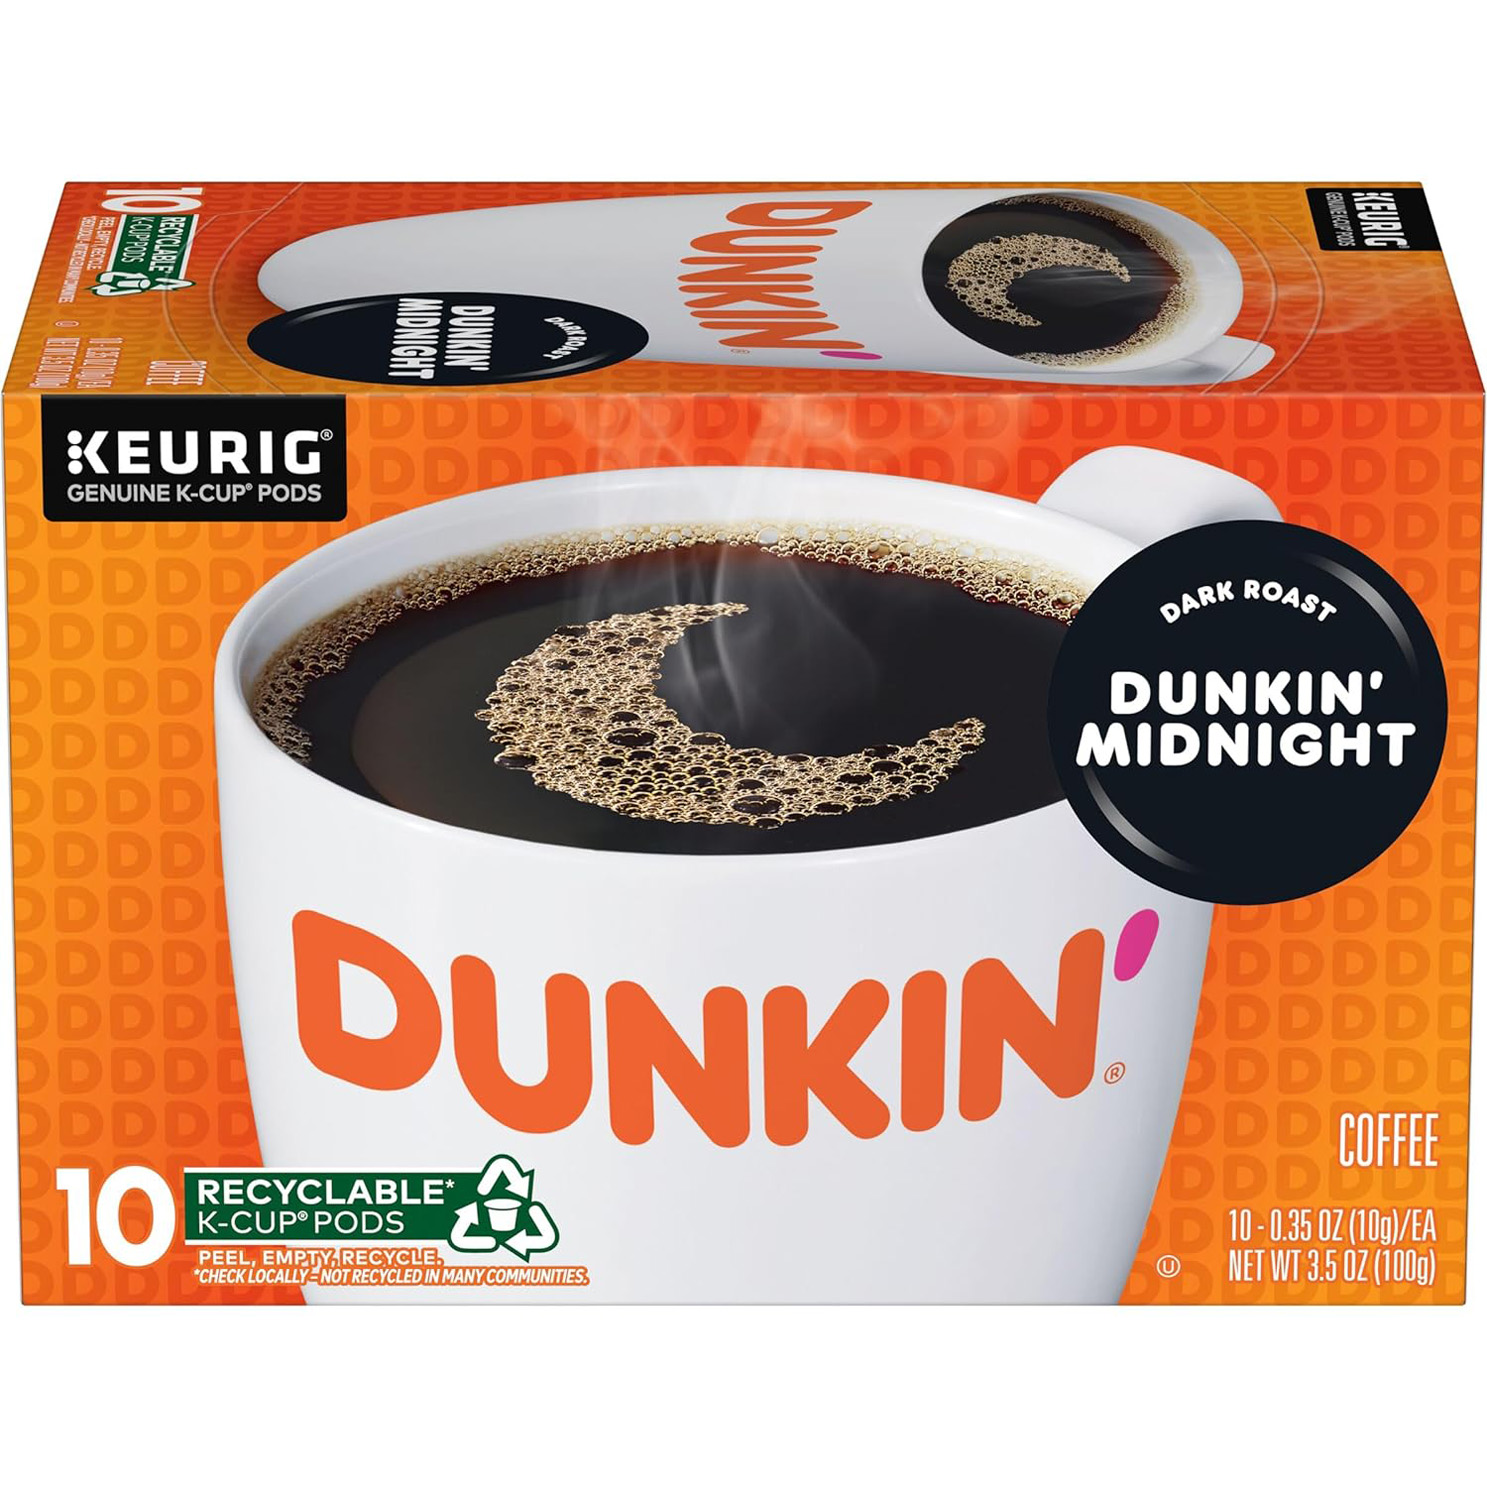 Dunkin’ Midnight Dark Roast Coffee, 60 Keurig K-Cup Pods